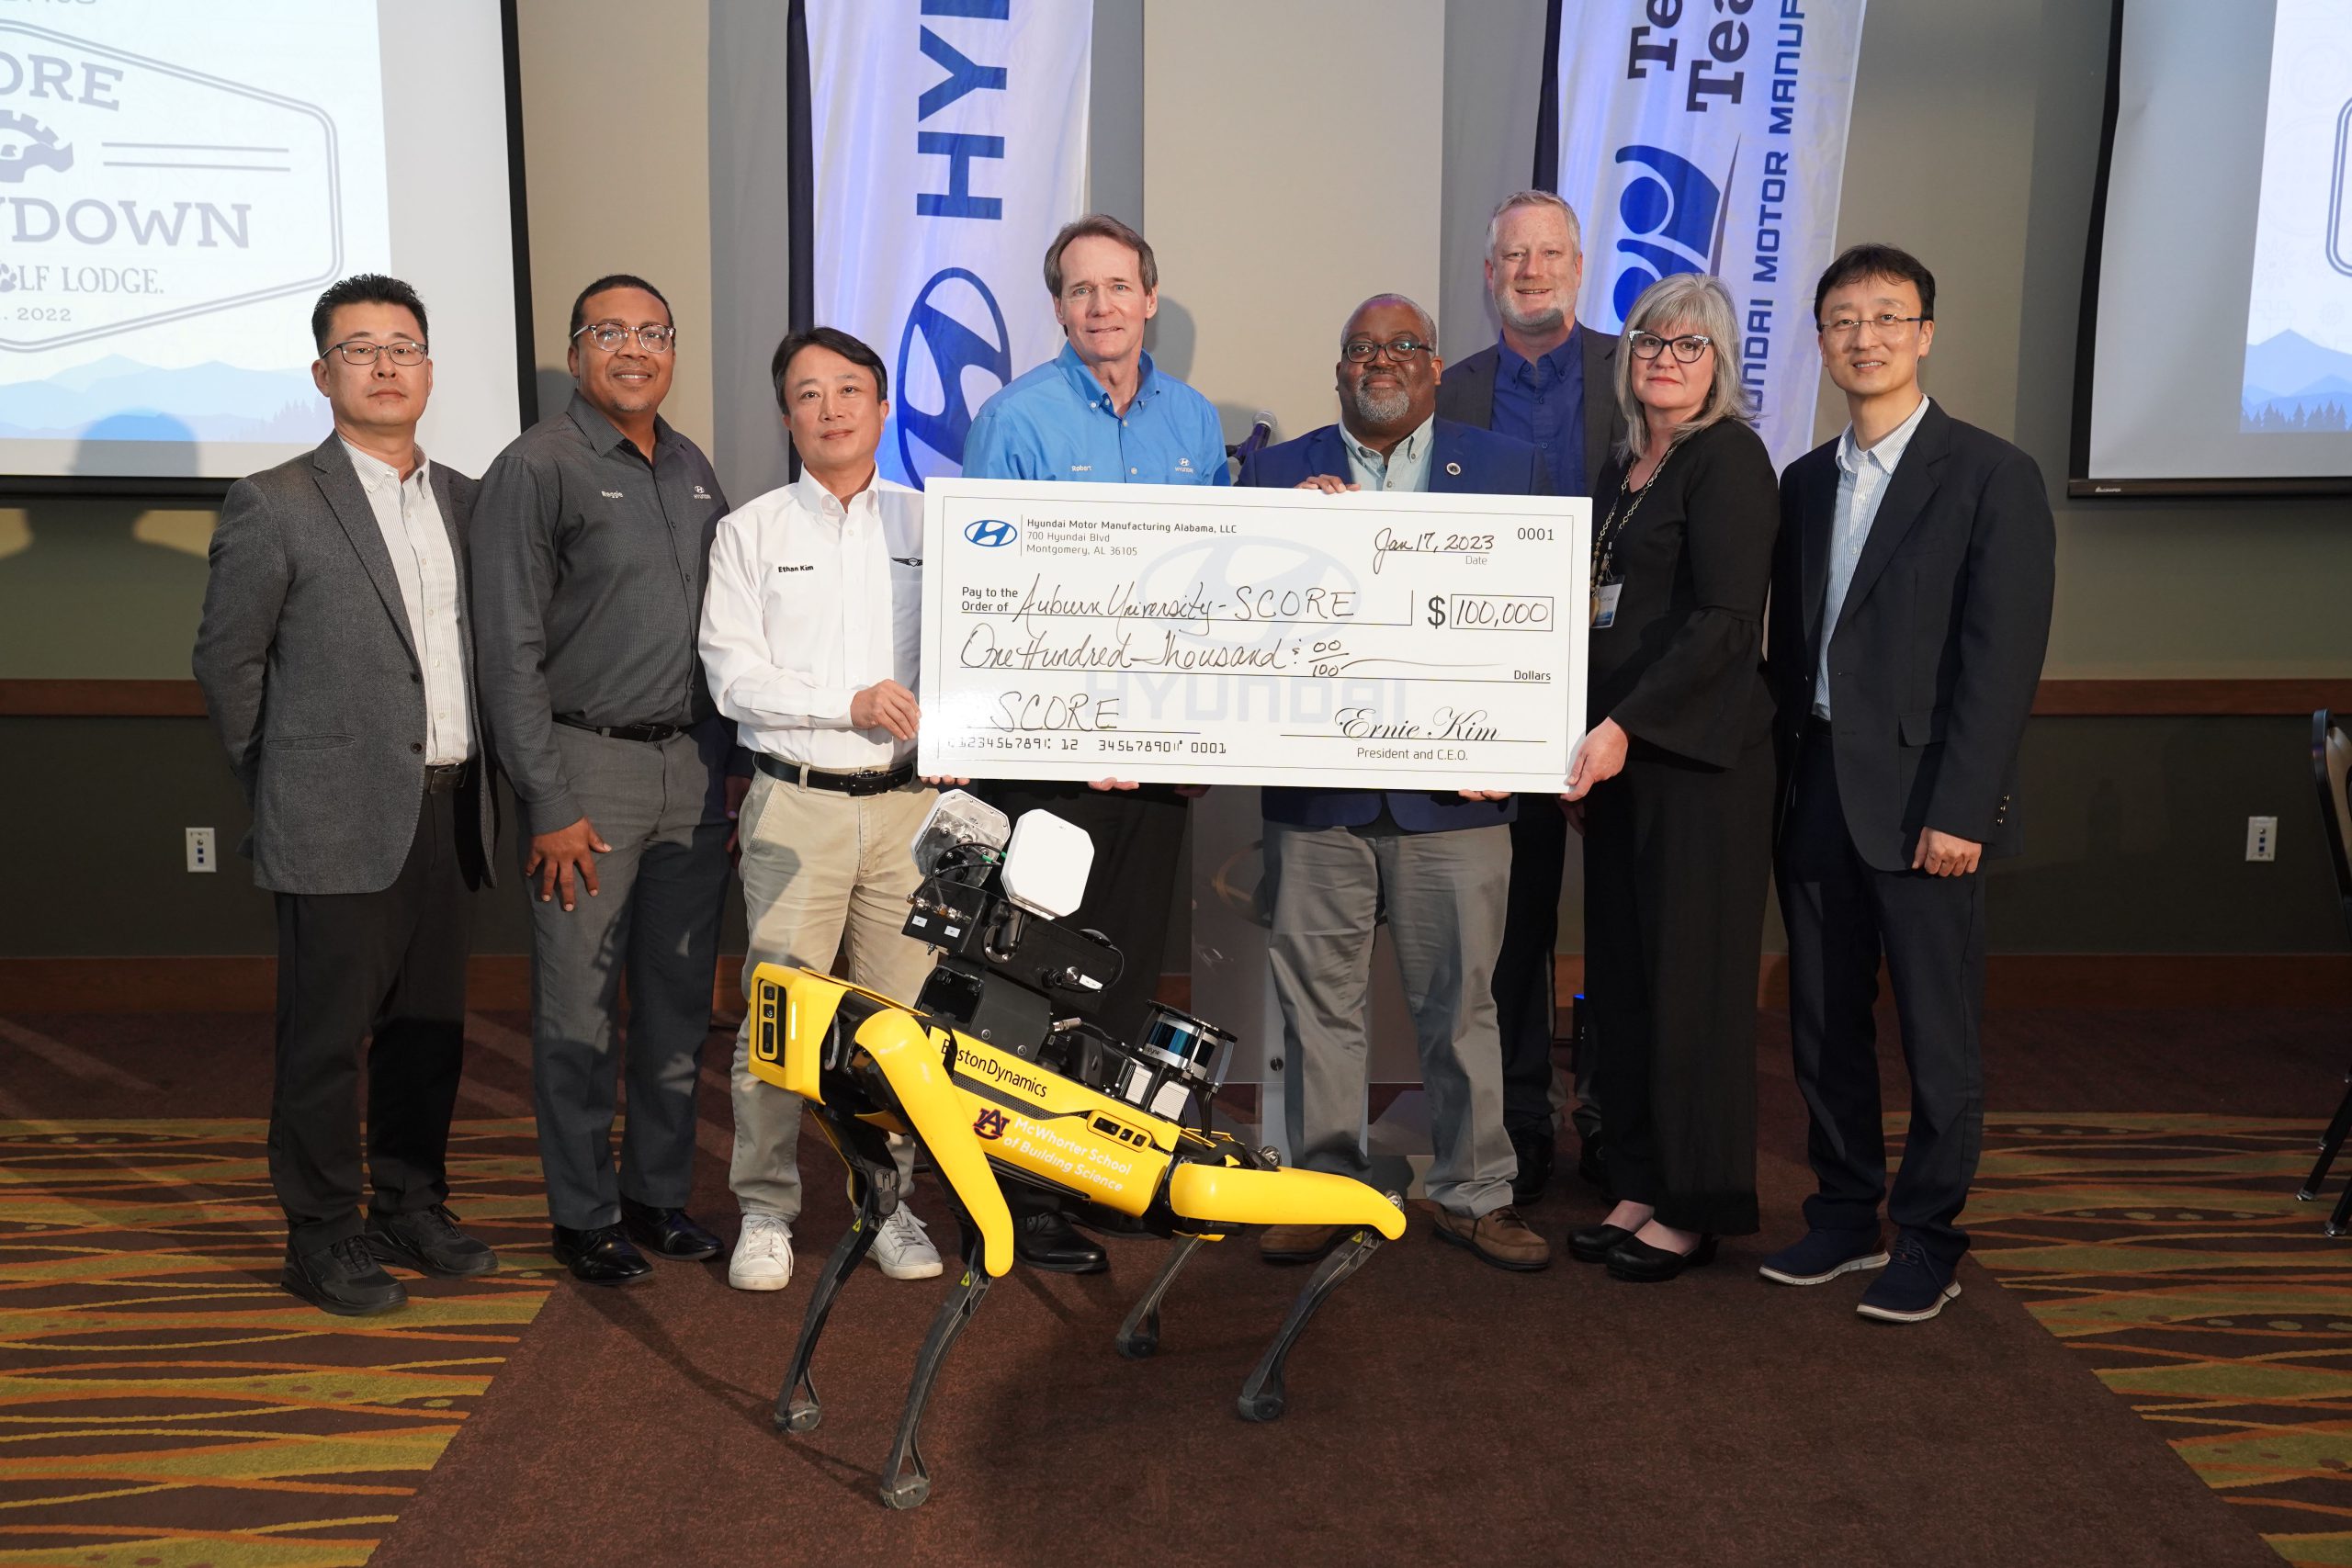 HMMA DONATES $100,000 TO PRESENT THE SCORE SHOWDOWN VEX ROBOTICS COMPETITION